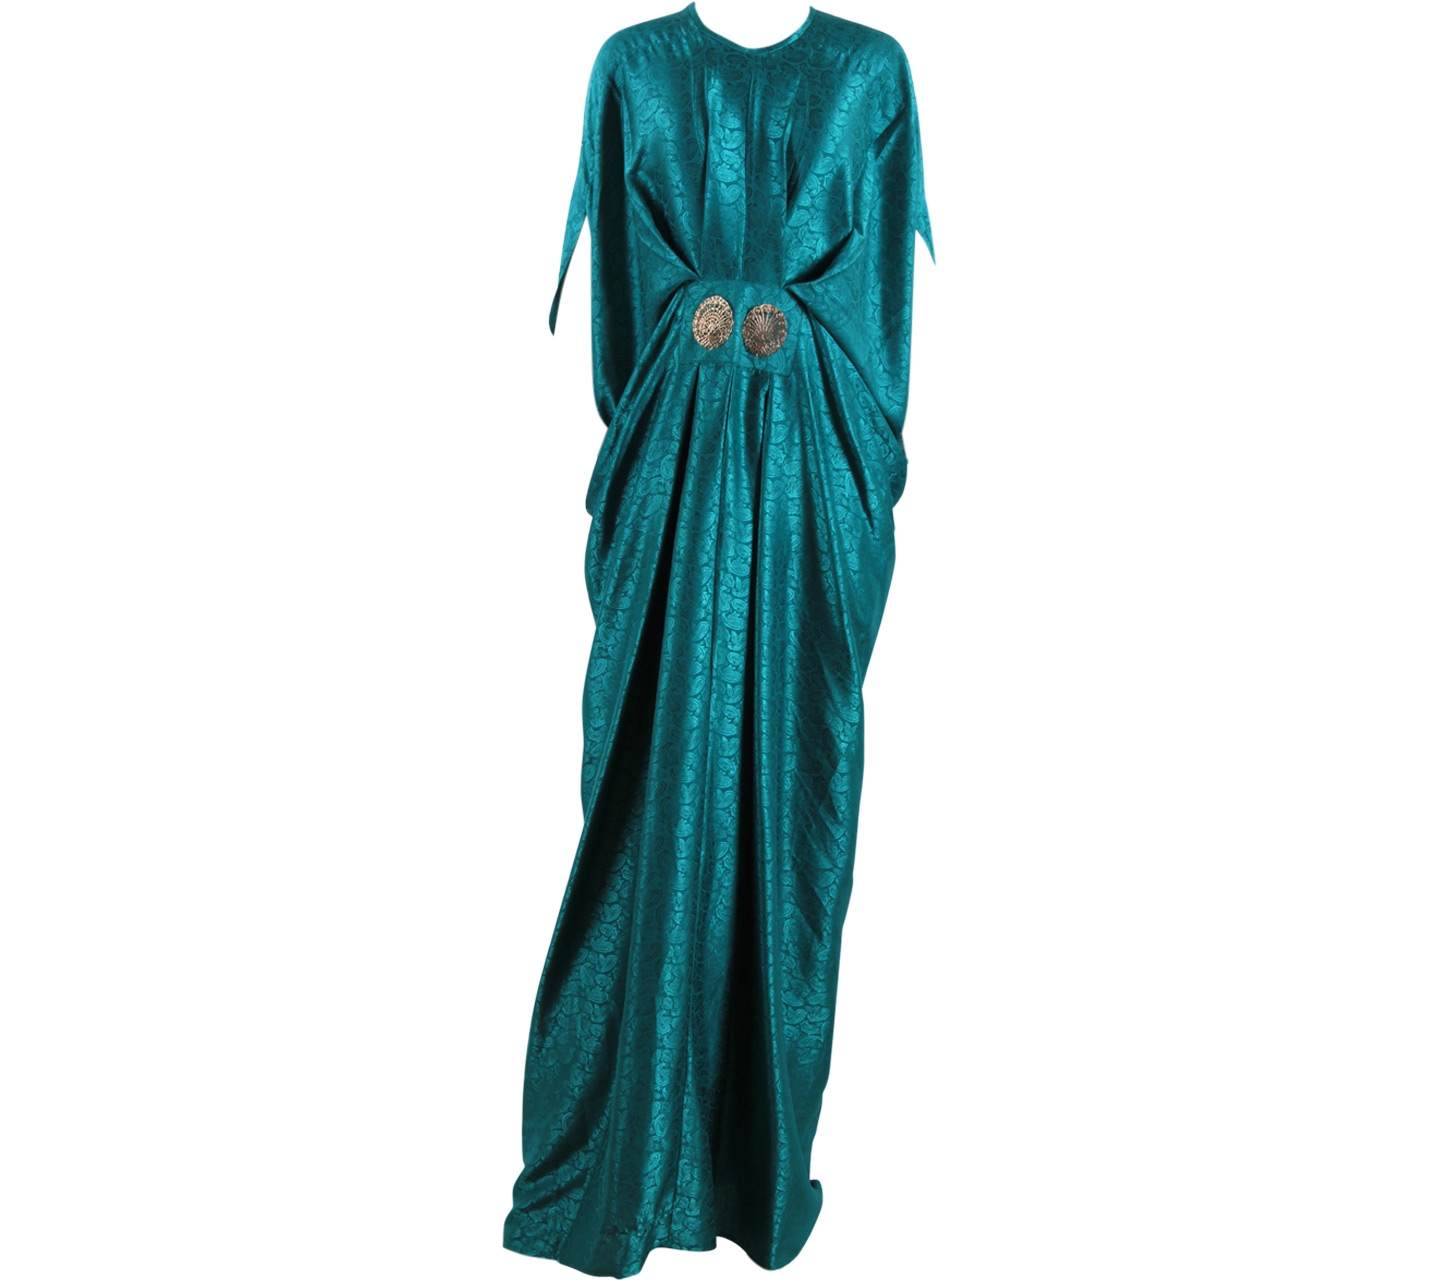 Rinjani Green Caftan Long Dress